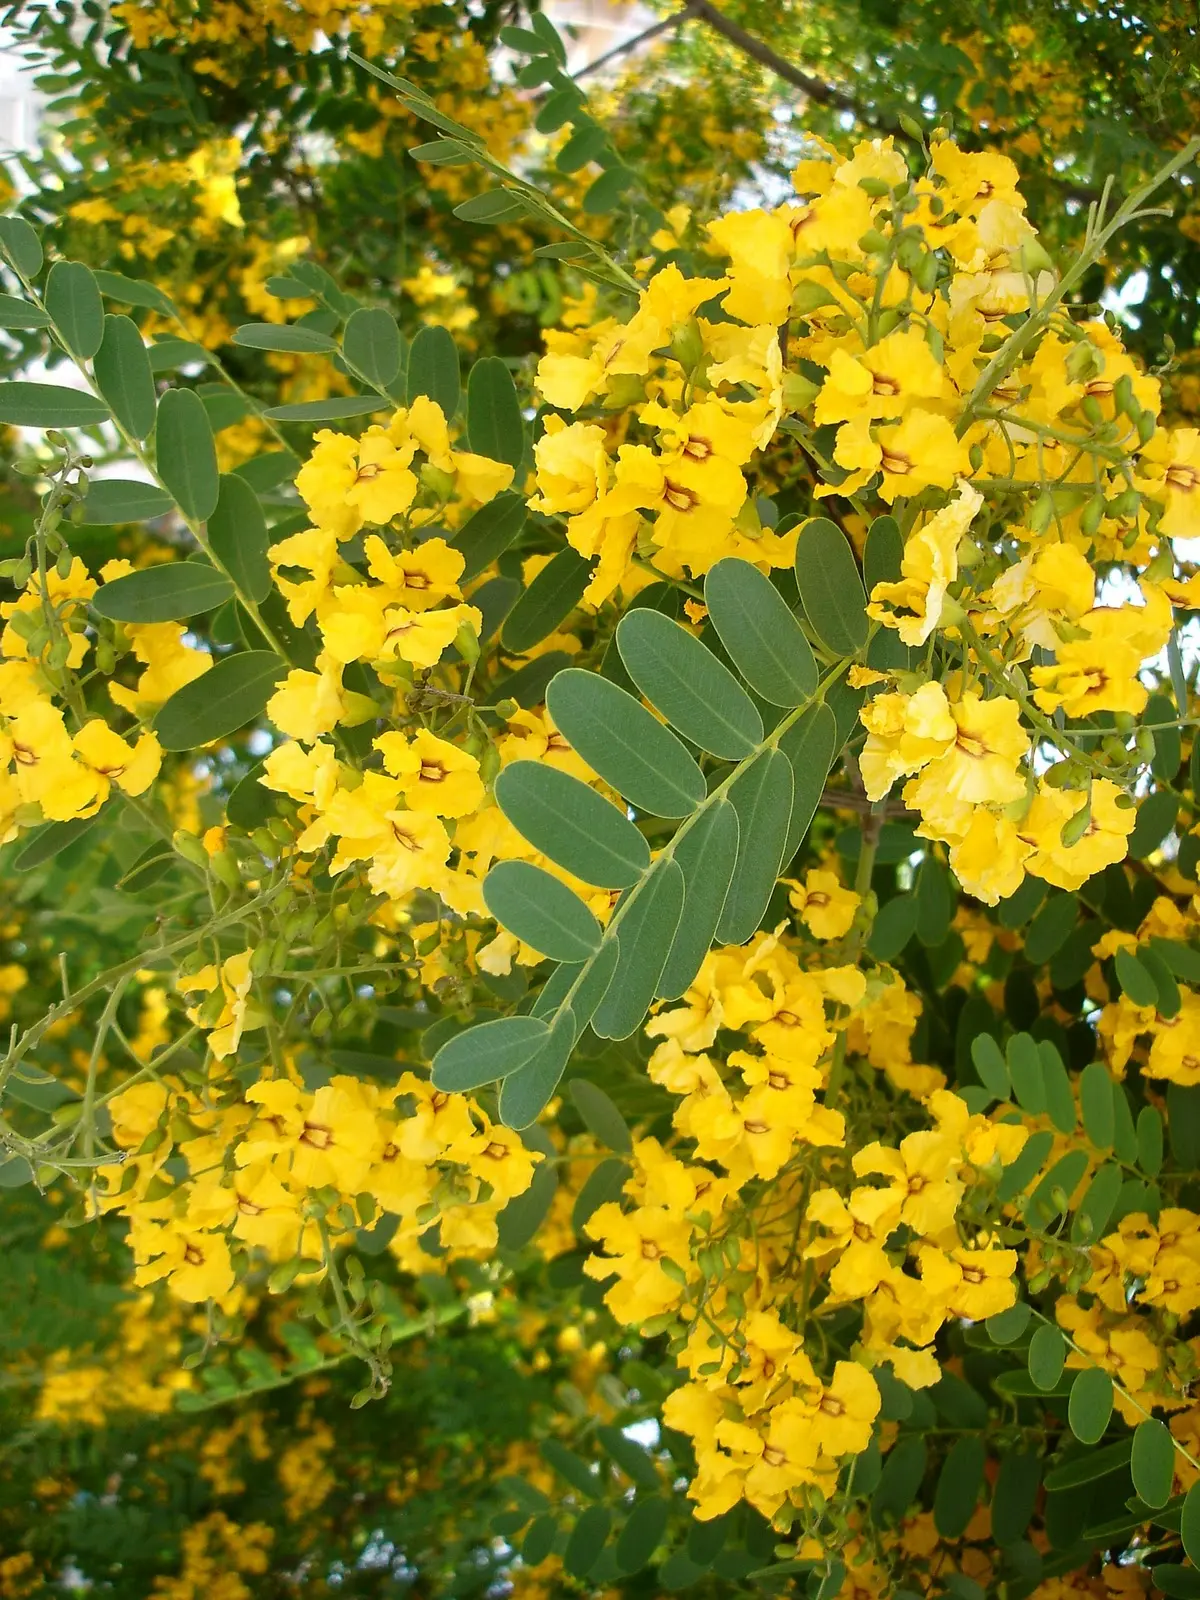 arbol de flores amarillas nombre - Cómo se llaman los árboles amarillos